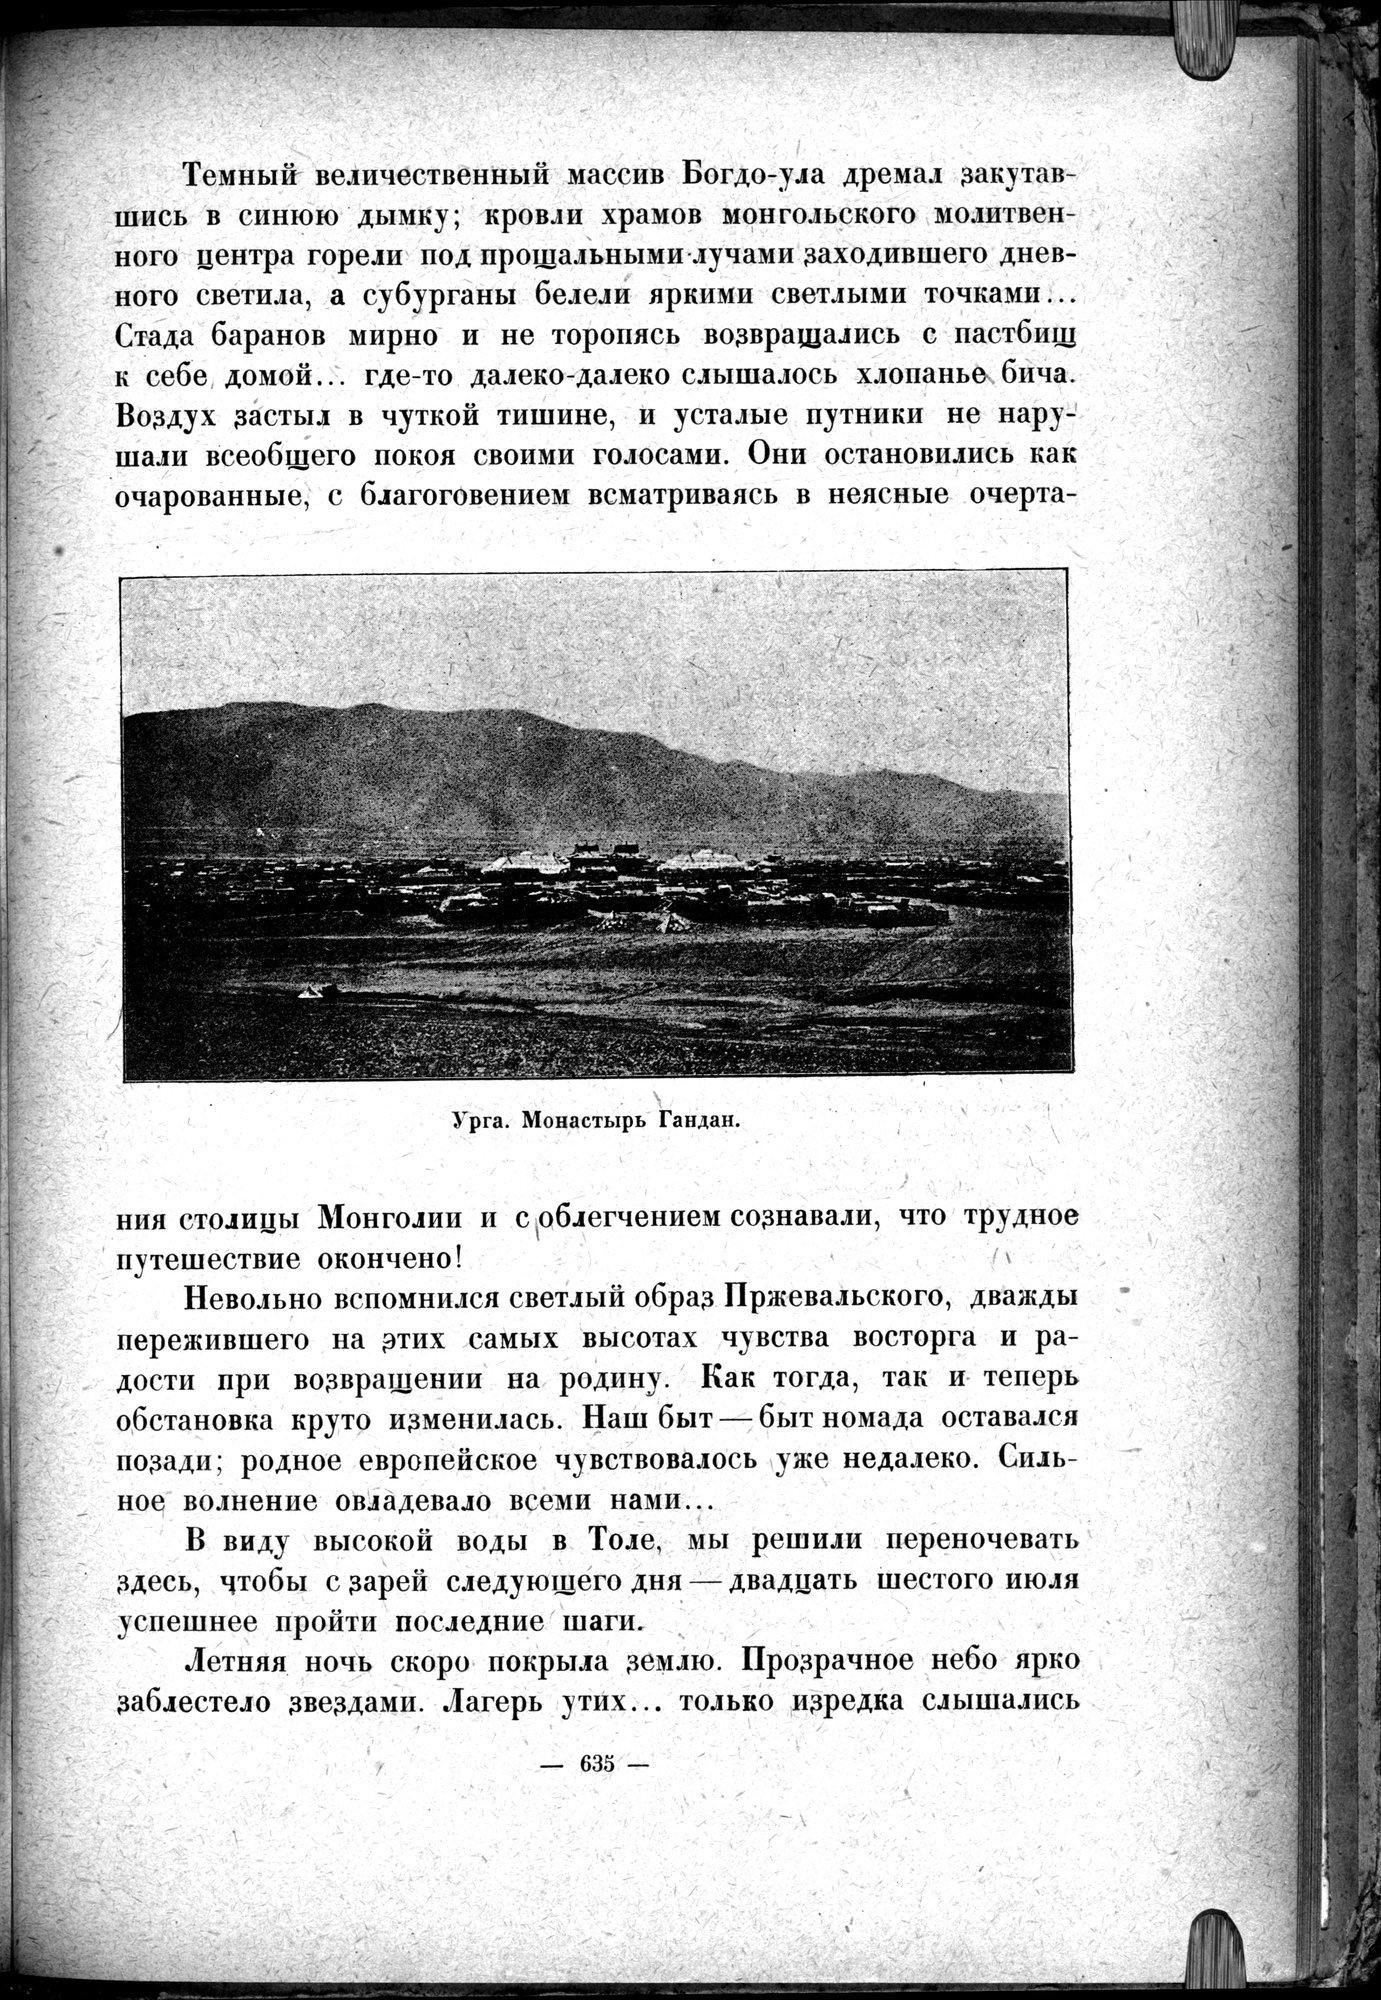 Mongoliya i Amdo i mertby gorod Khara-Khoto : vol.1 / 725 ページ（白黒高解像度画像）